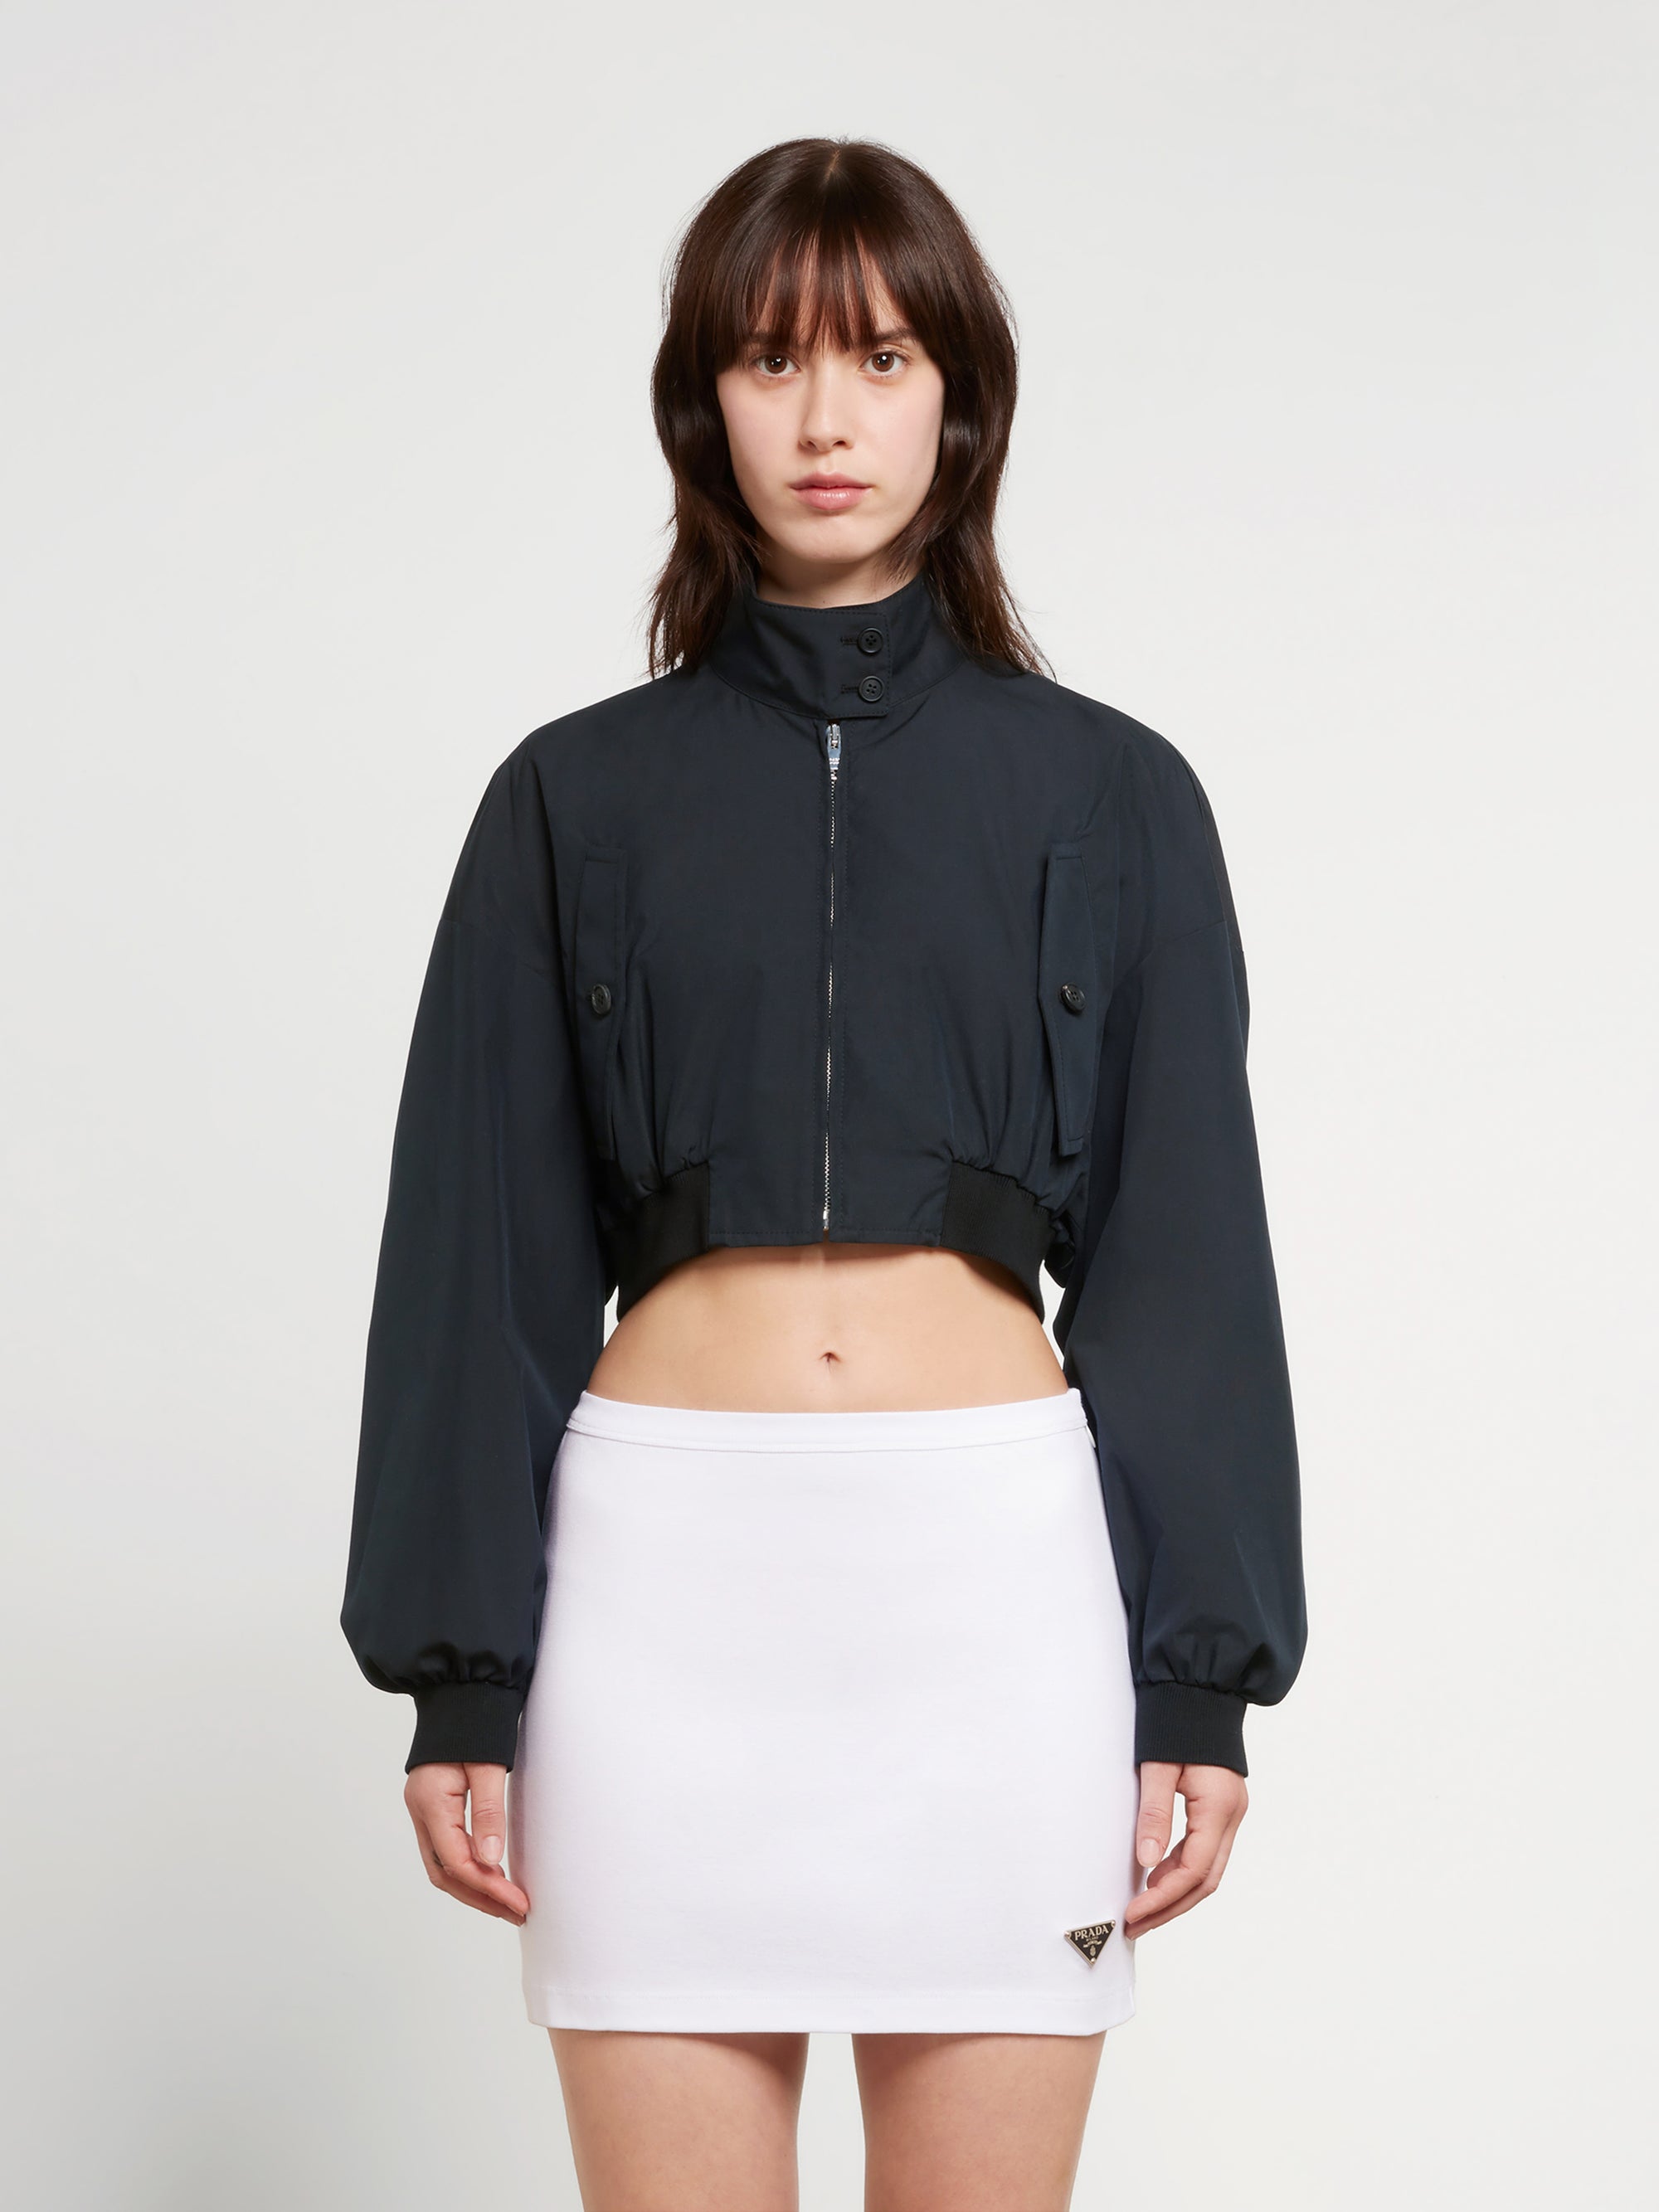 Prada Women's Stretch Jersey Top - Black - Size 6